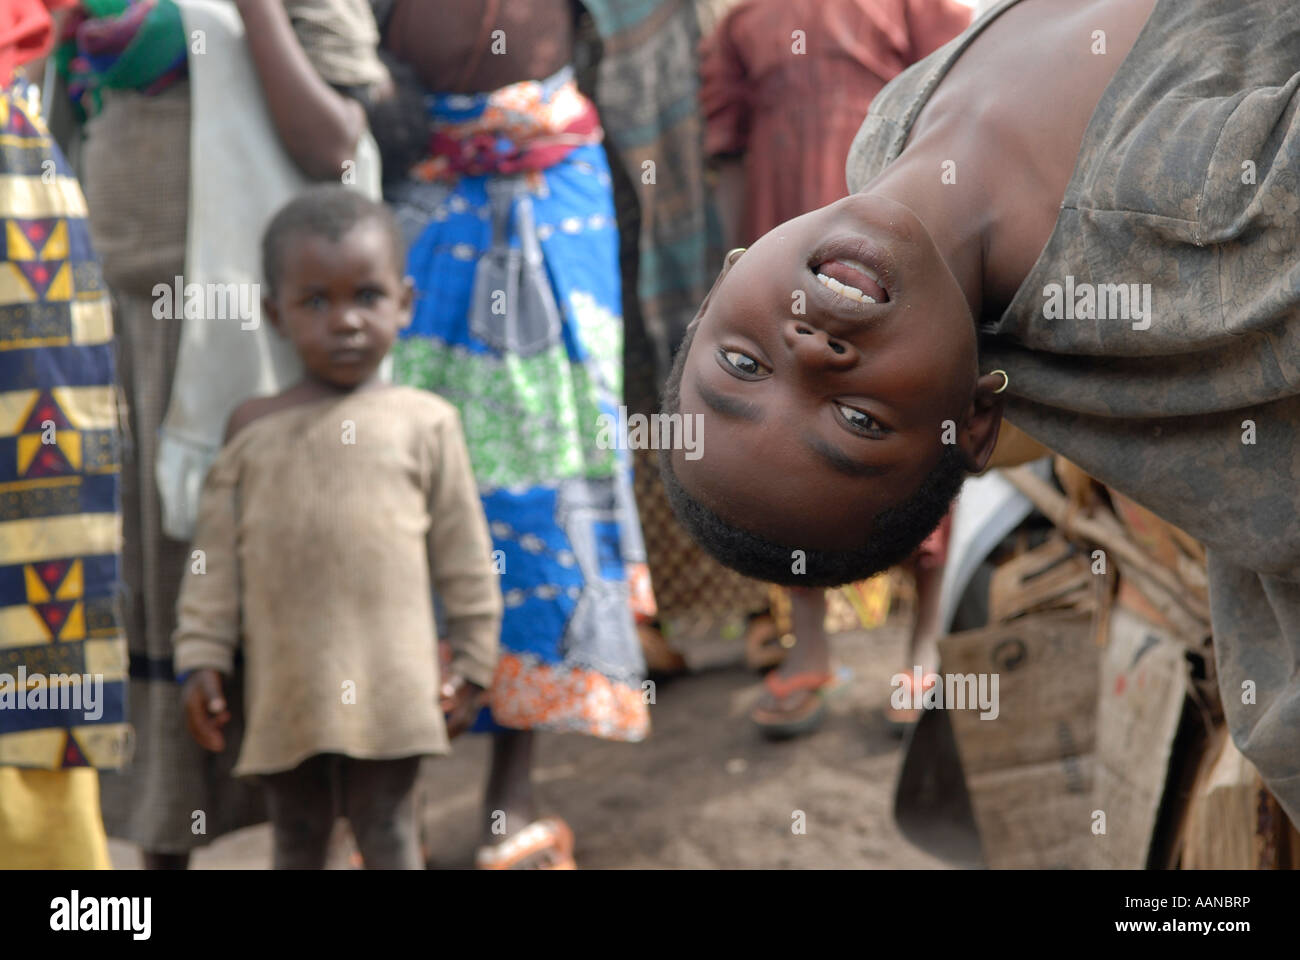 Intern vertriebene Kinder in einem provisorischen Lager der IDP in Nord-Kivu, DR Kongo, Afrika Stockfoto